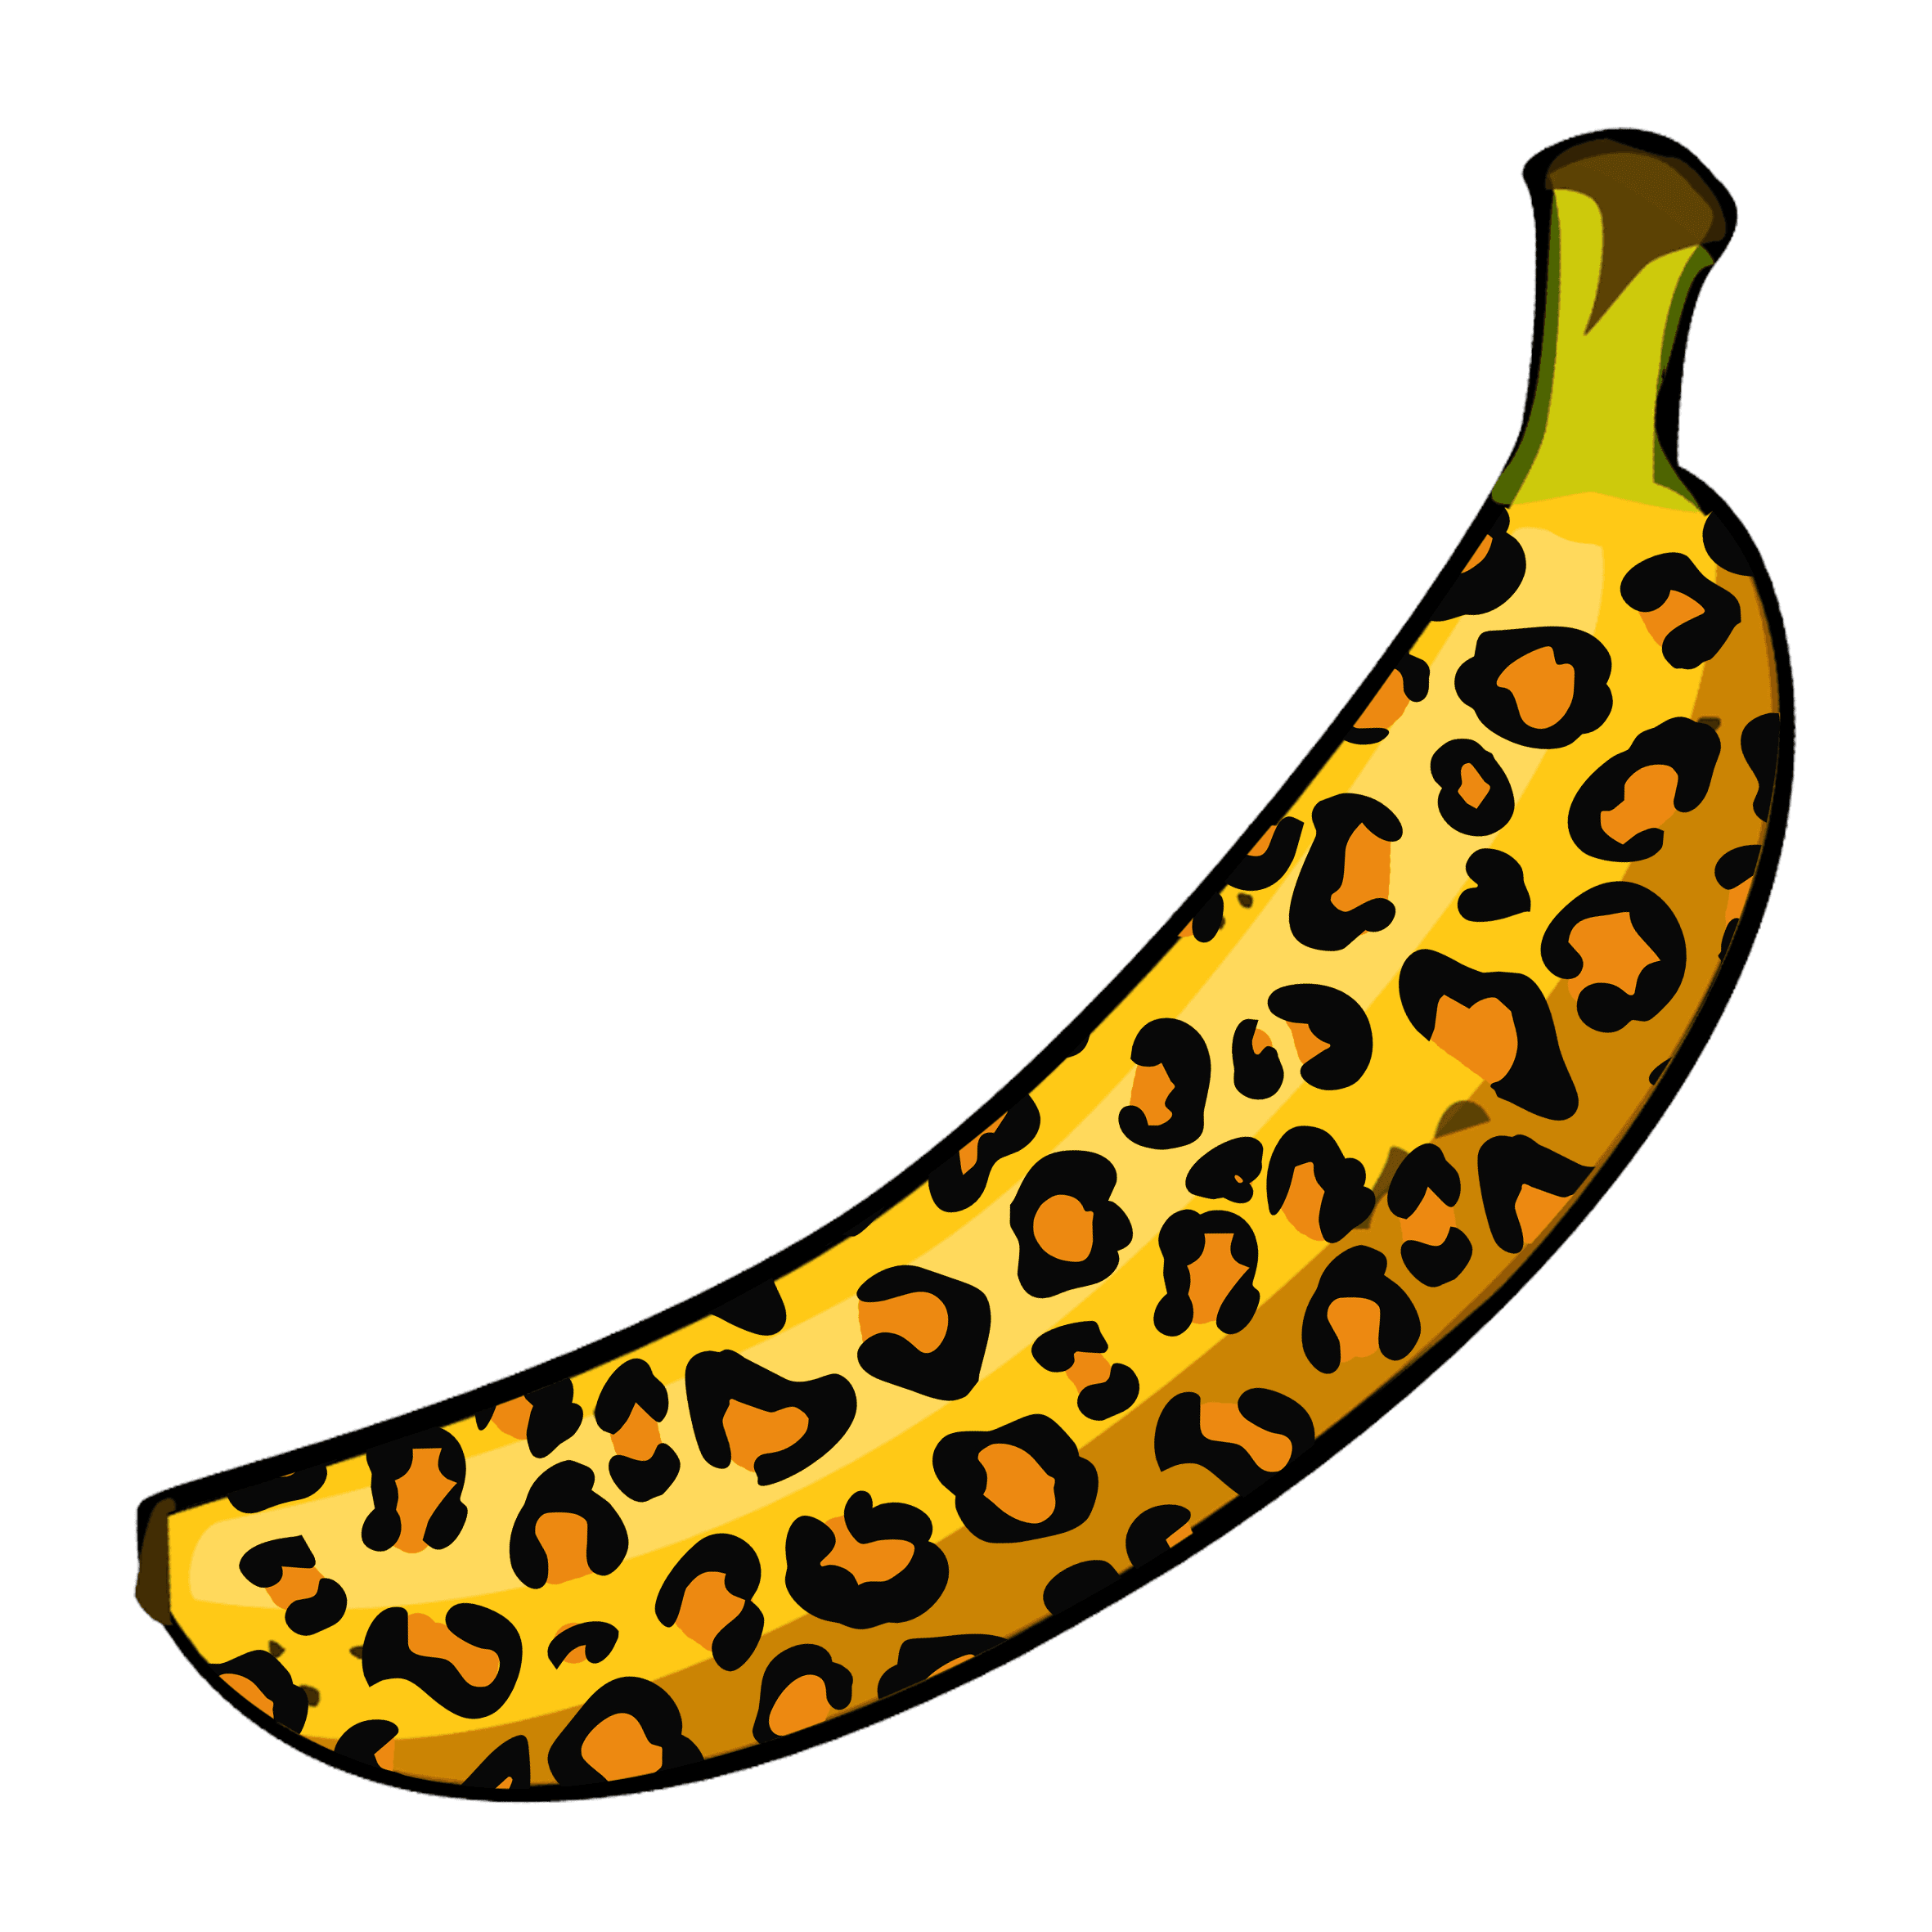 BananaFund